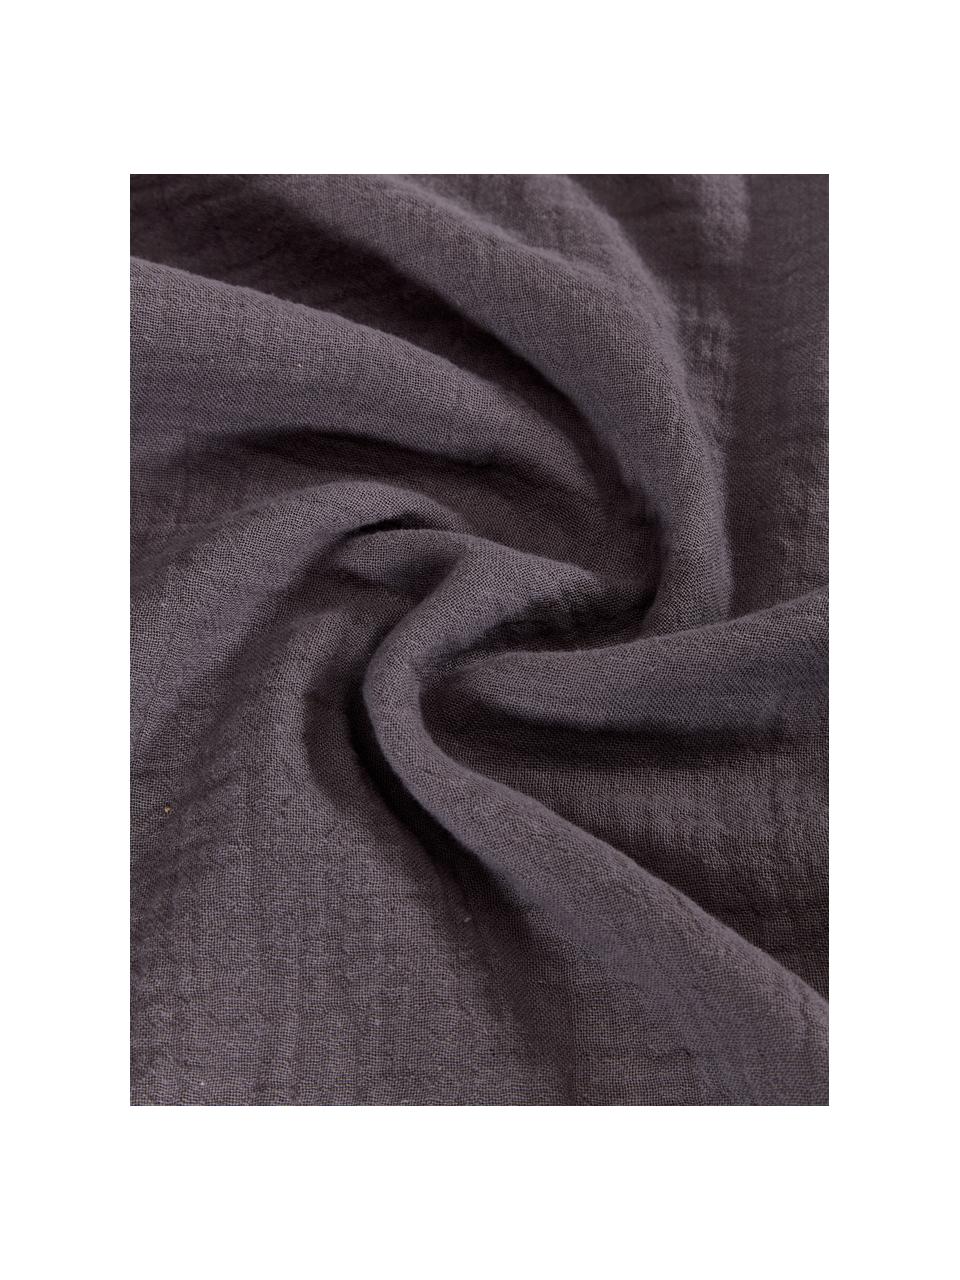 Taie d'oreiller mousseline de coton gris foncé Odile, 2 pièces, Gris foncé, larg. 50 x long. 70 cm (2 pièces)